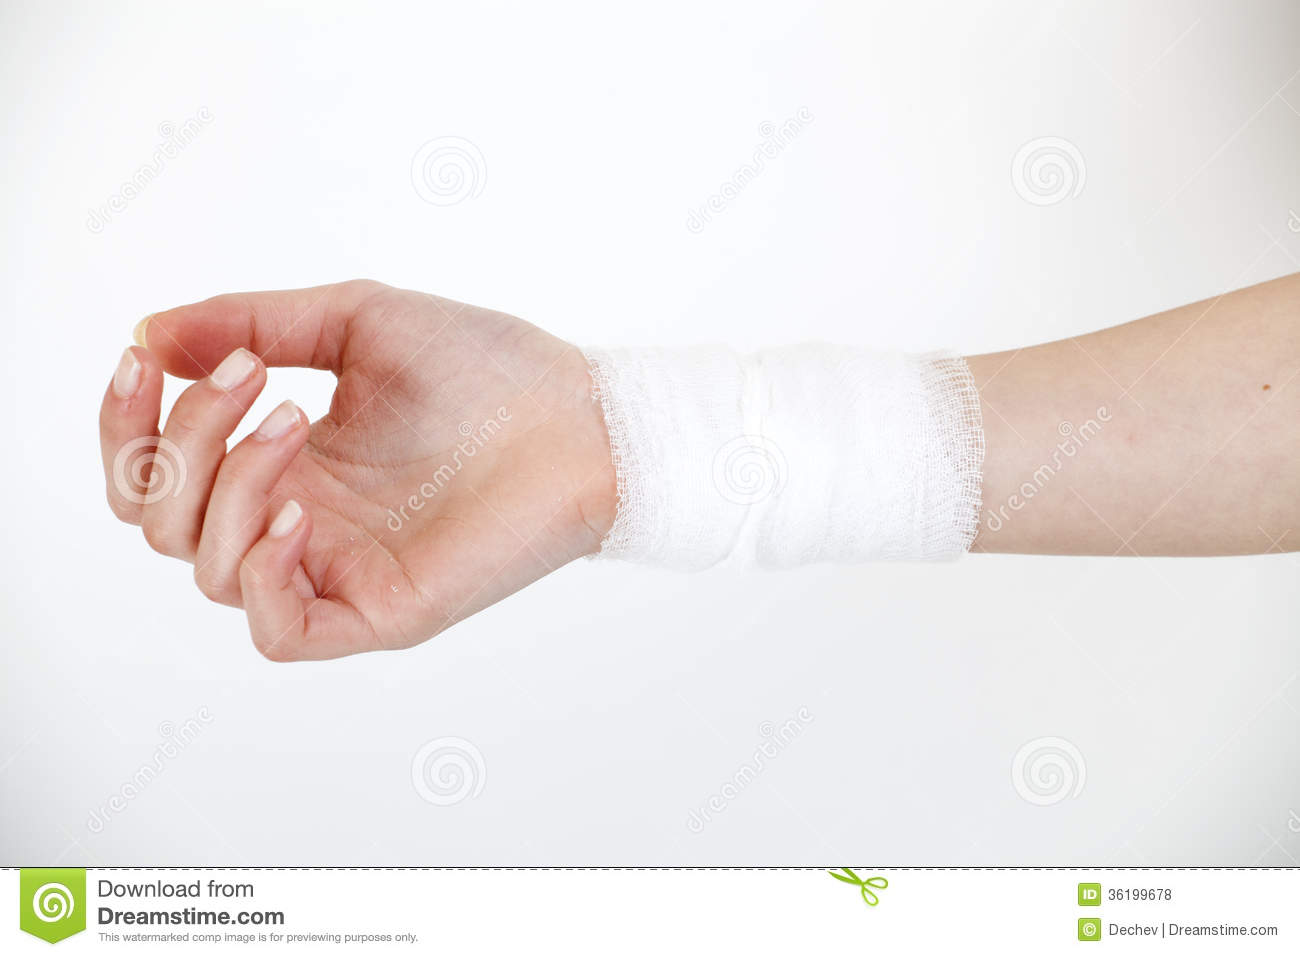 Medicine Bandage On Injury Hand Royalty Free Stock Photos   Image